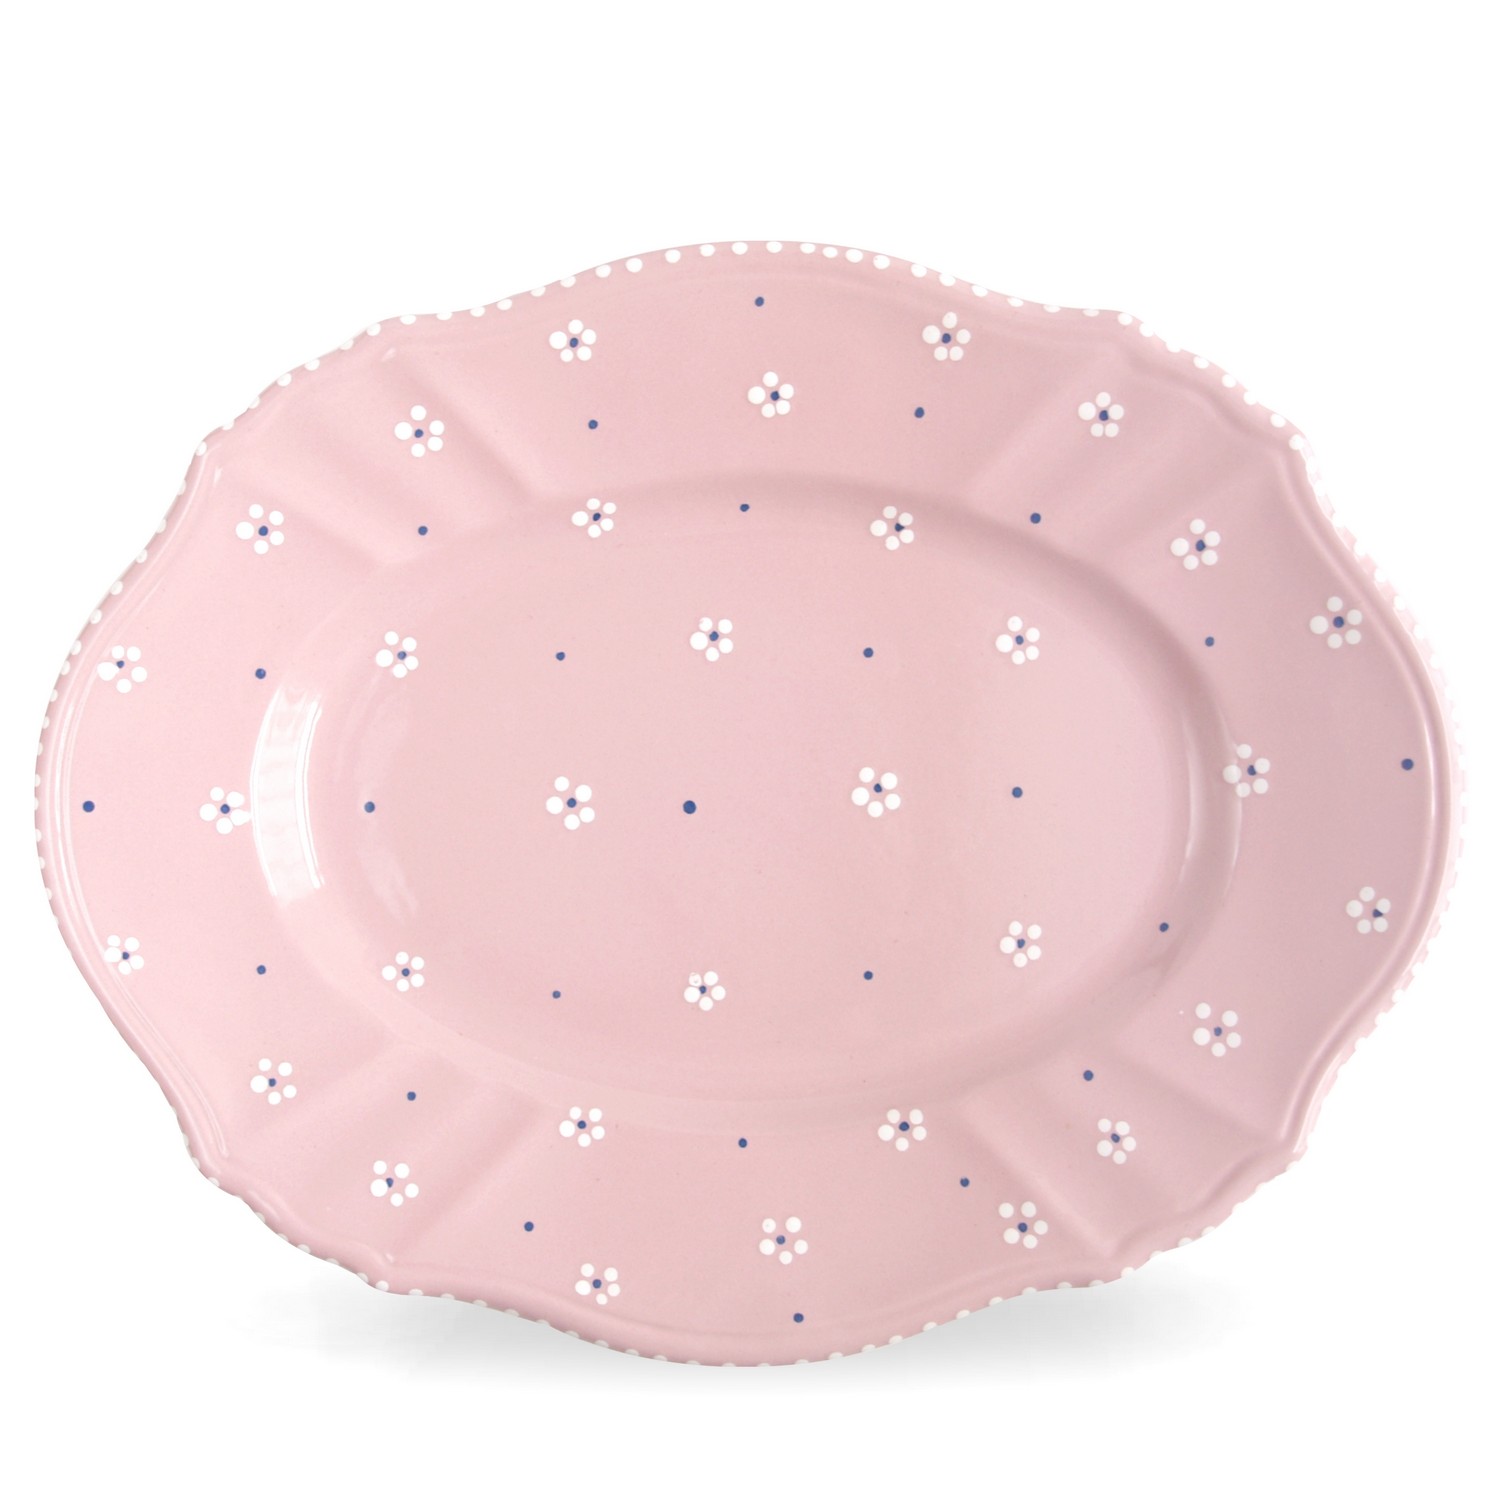 gmundner 4596 platte keramik dirndlrosa rosa 1